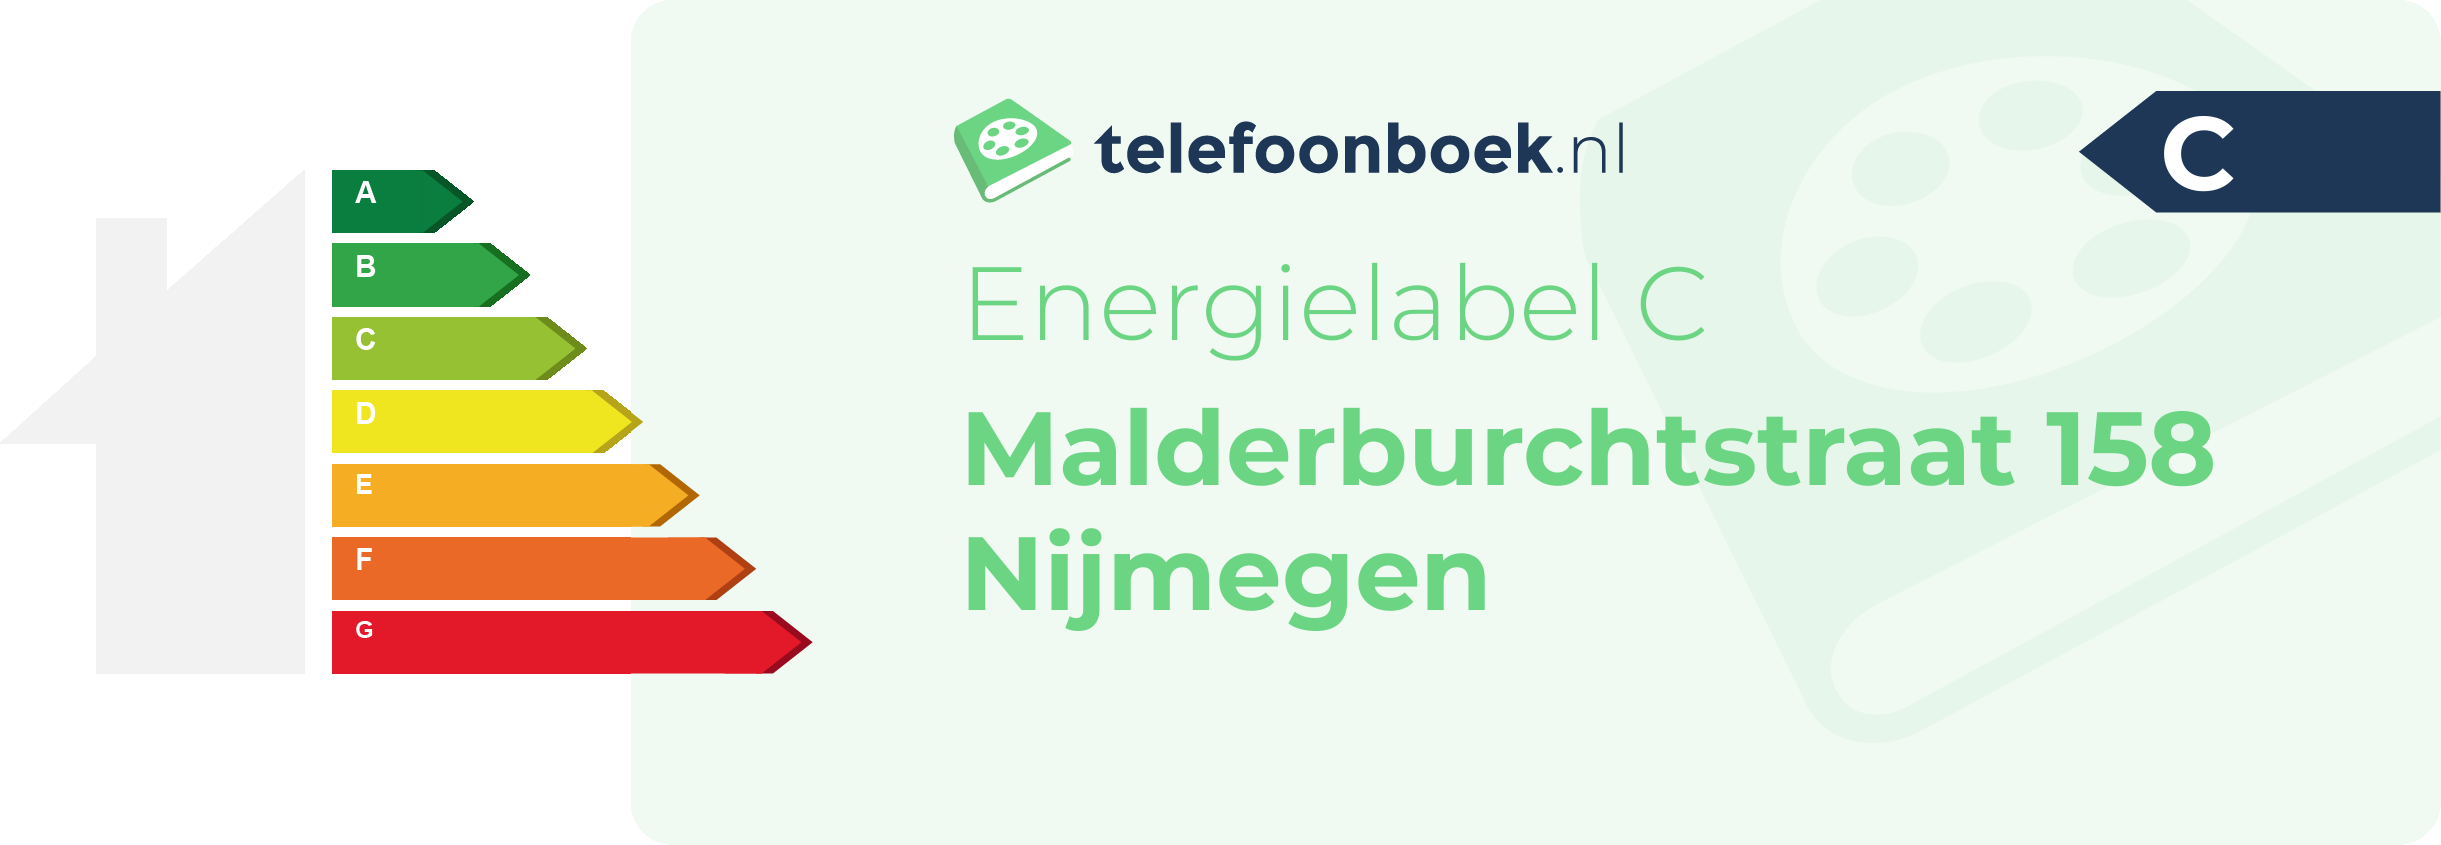 Energielabel Malderburchtstraat 158 Nijmegen